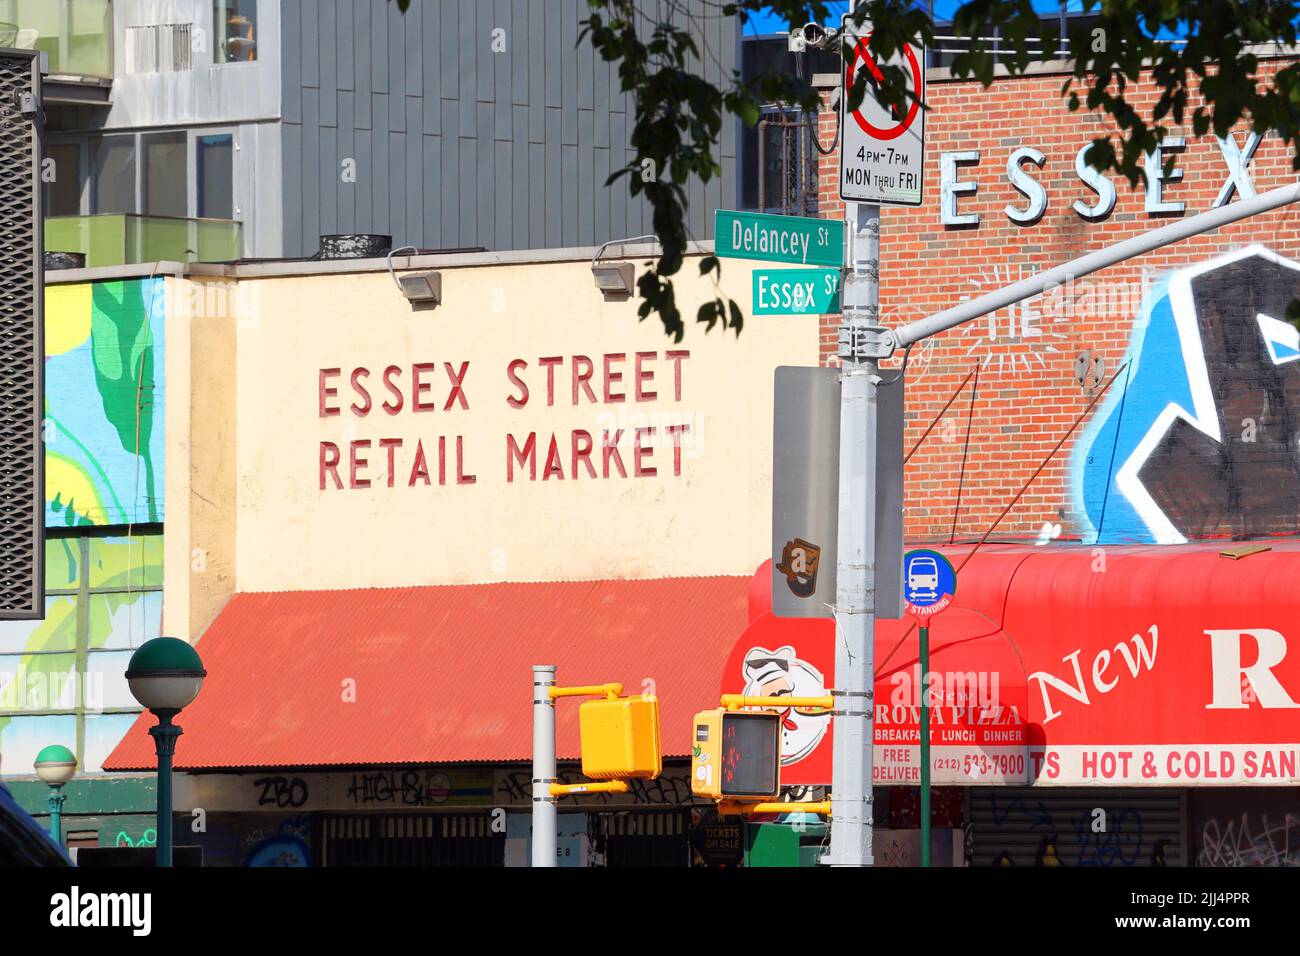 Essex Street Retail Market an der Ecke Essex St und Delancey St in Manhattans Lower East Side, New York. Stockfoto